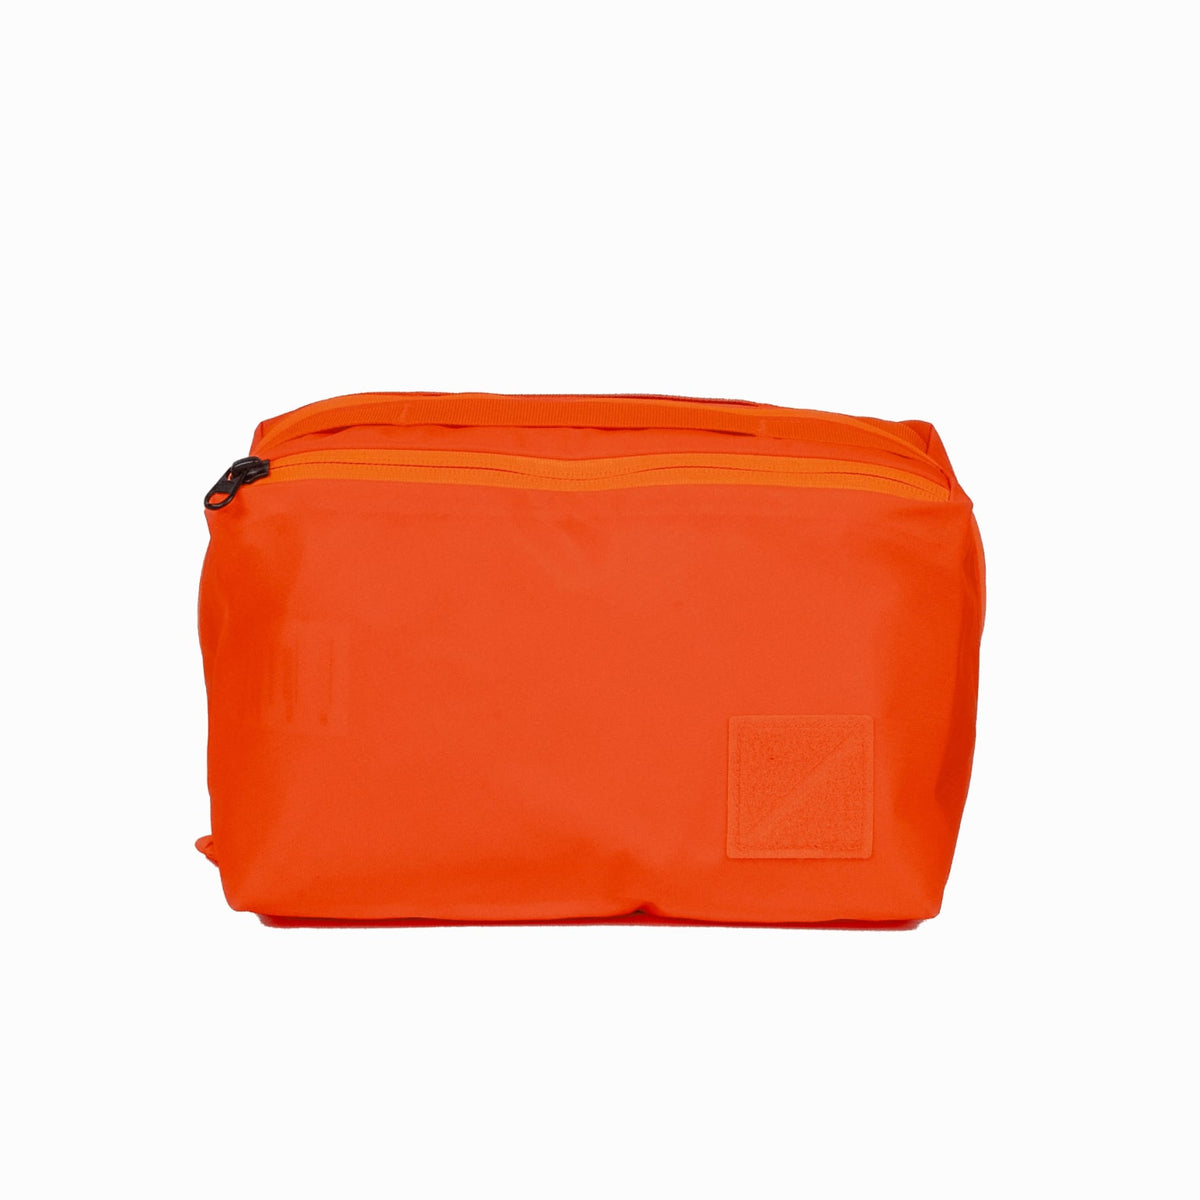 Transit Packing Cube 8L Hot Orange